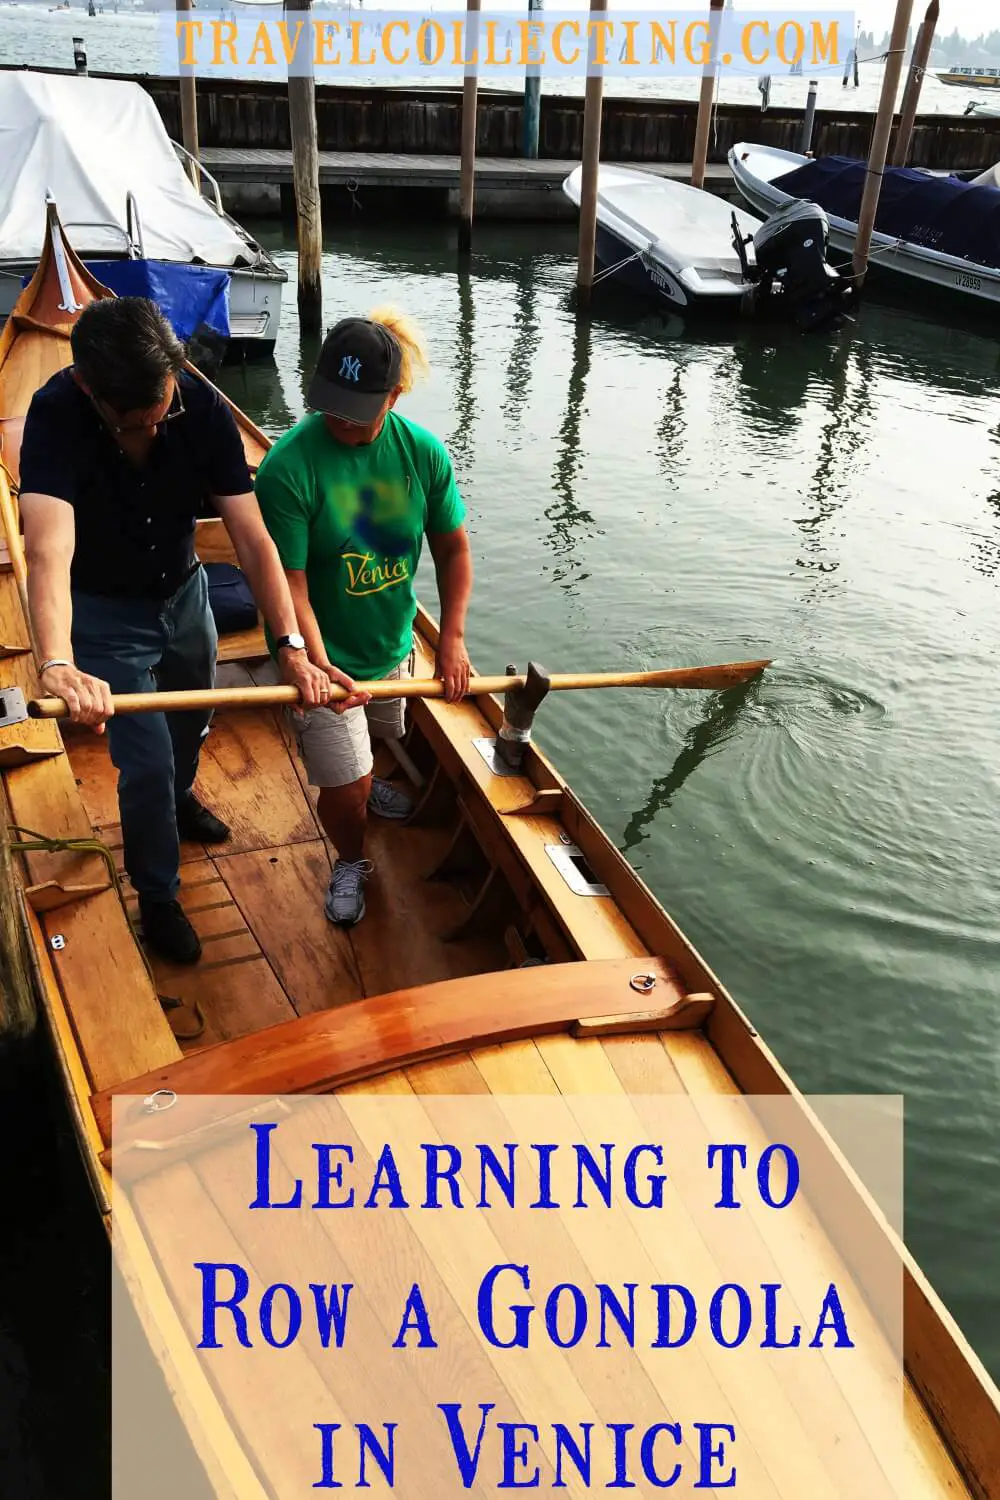 Venice learning to row a gondola